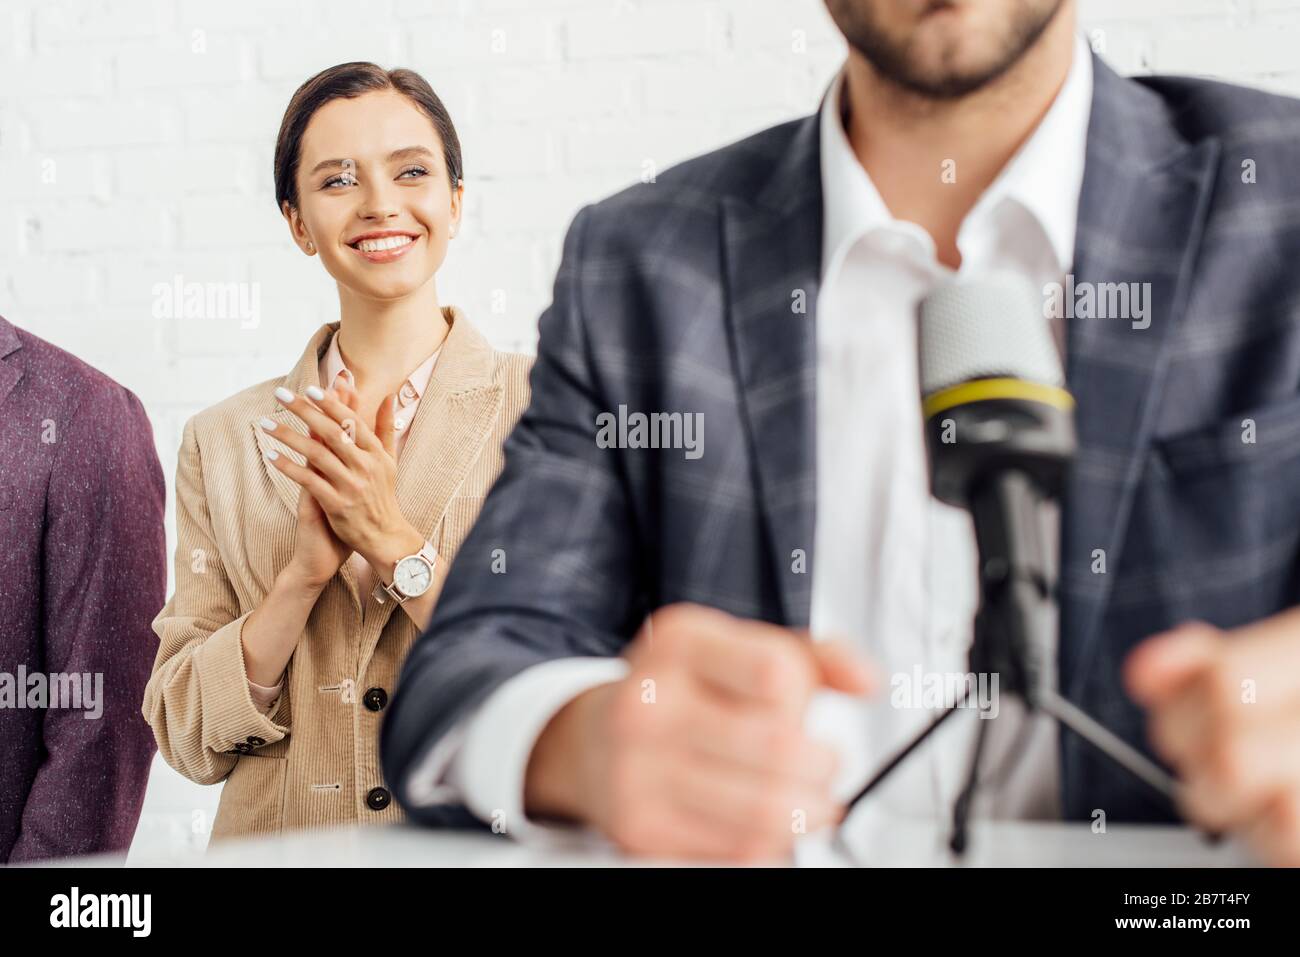 obiettivo selettivo di attraente donna d'affari in abbigliamento formale applapping in sala conferenze Foto Stock